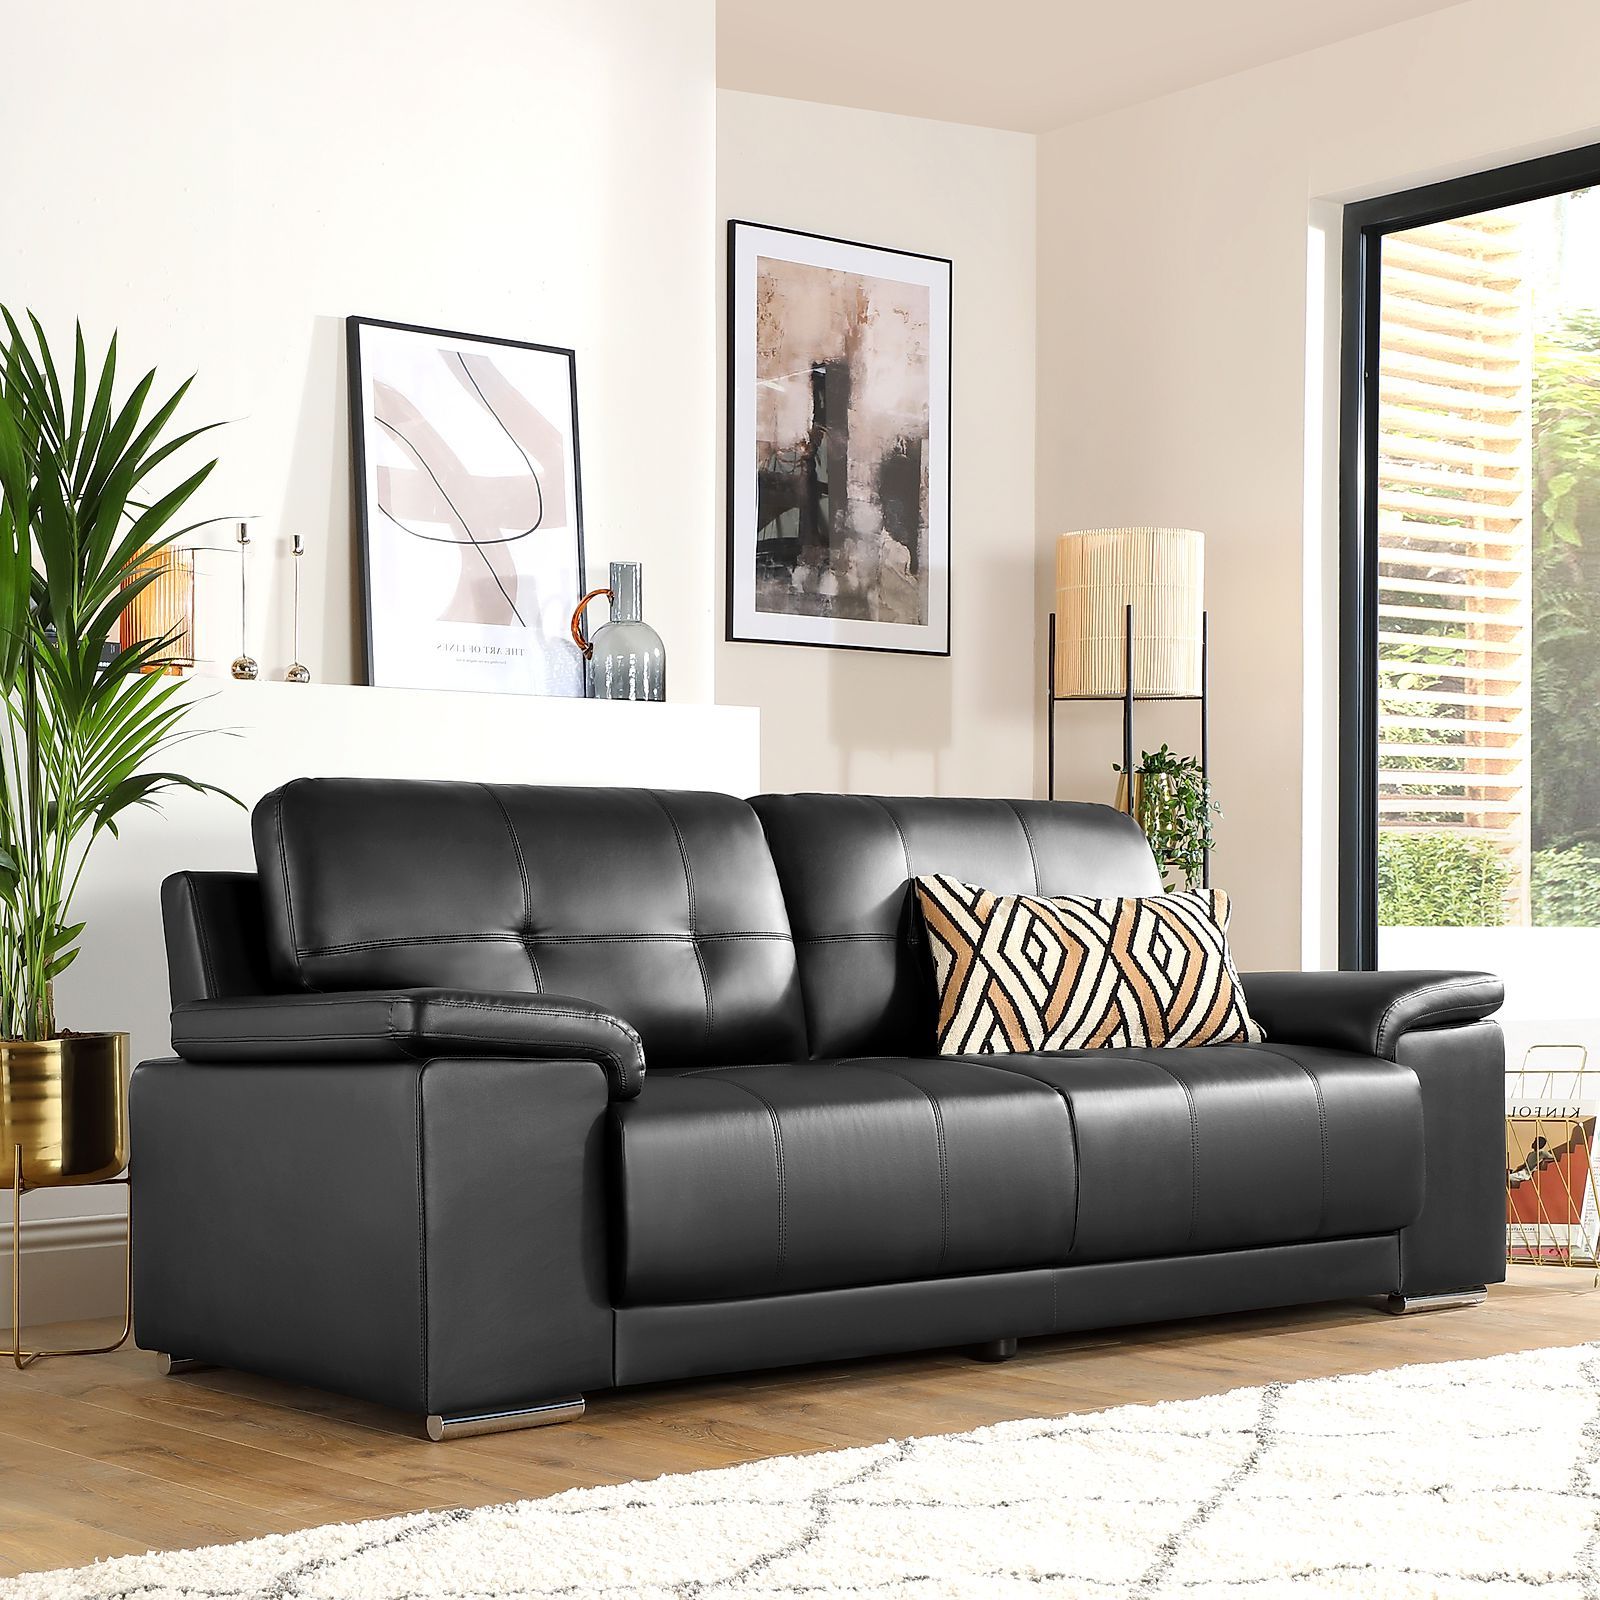 Furniture Choice Regarding Favorite 3 Seat L Shaped Sofas In Black (Photo 6 of 15)